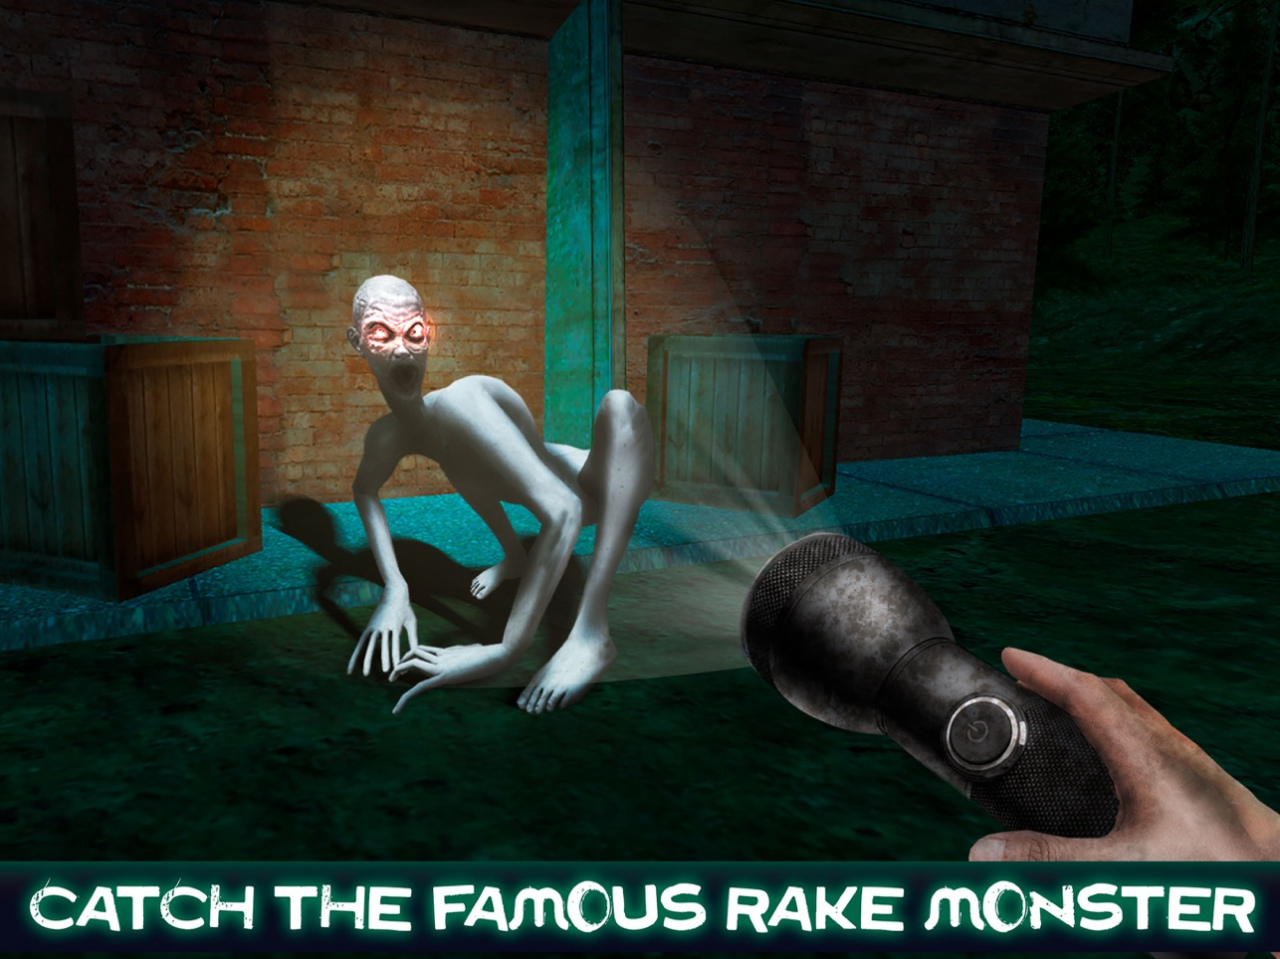 Forsake The Rake 🕹️ Play Now on GamePix